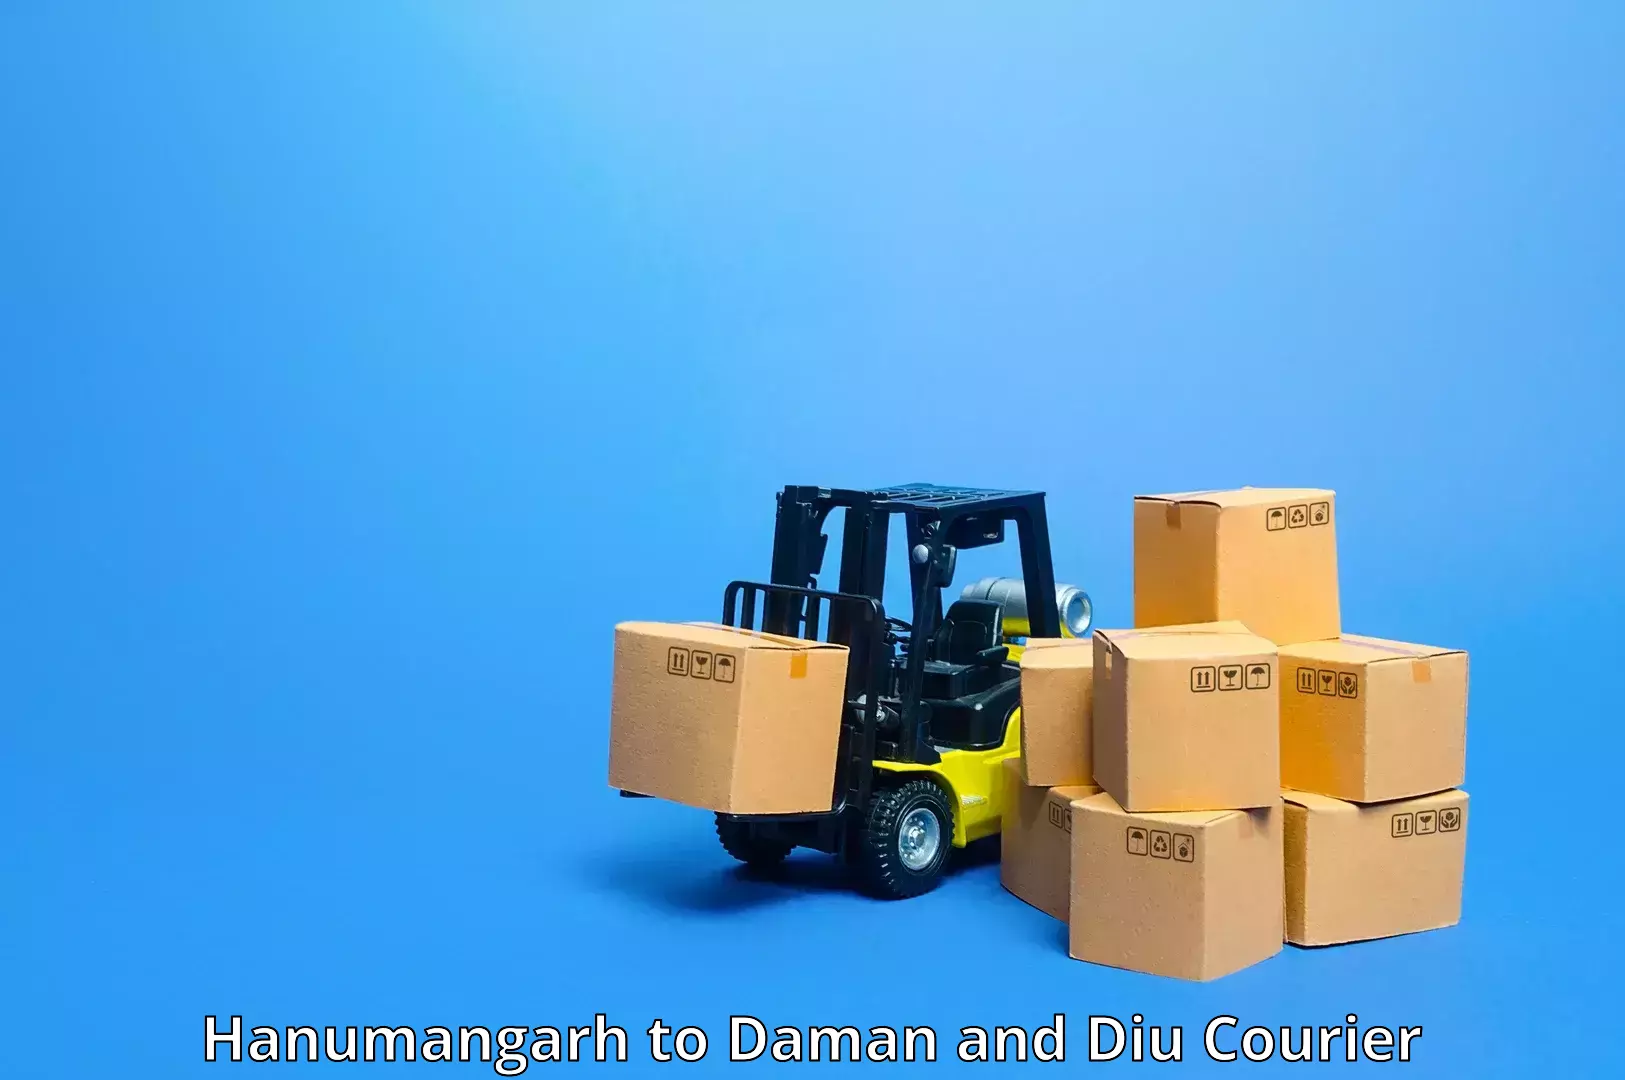 Express mail service Hanumangarh to Daman and Diu